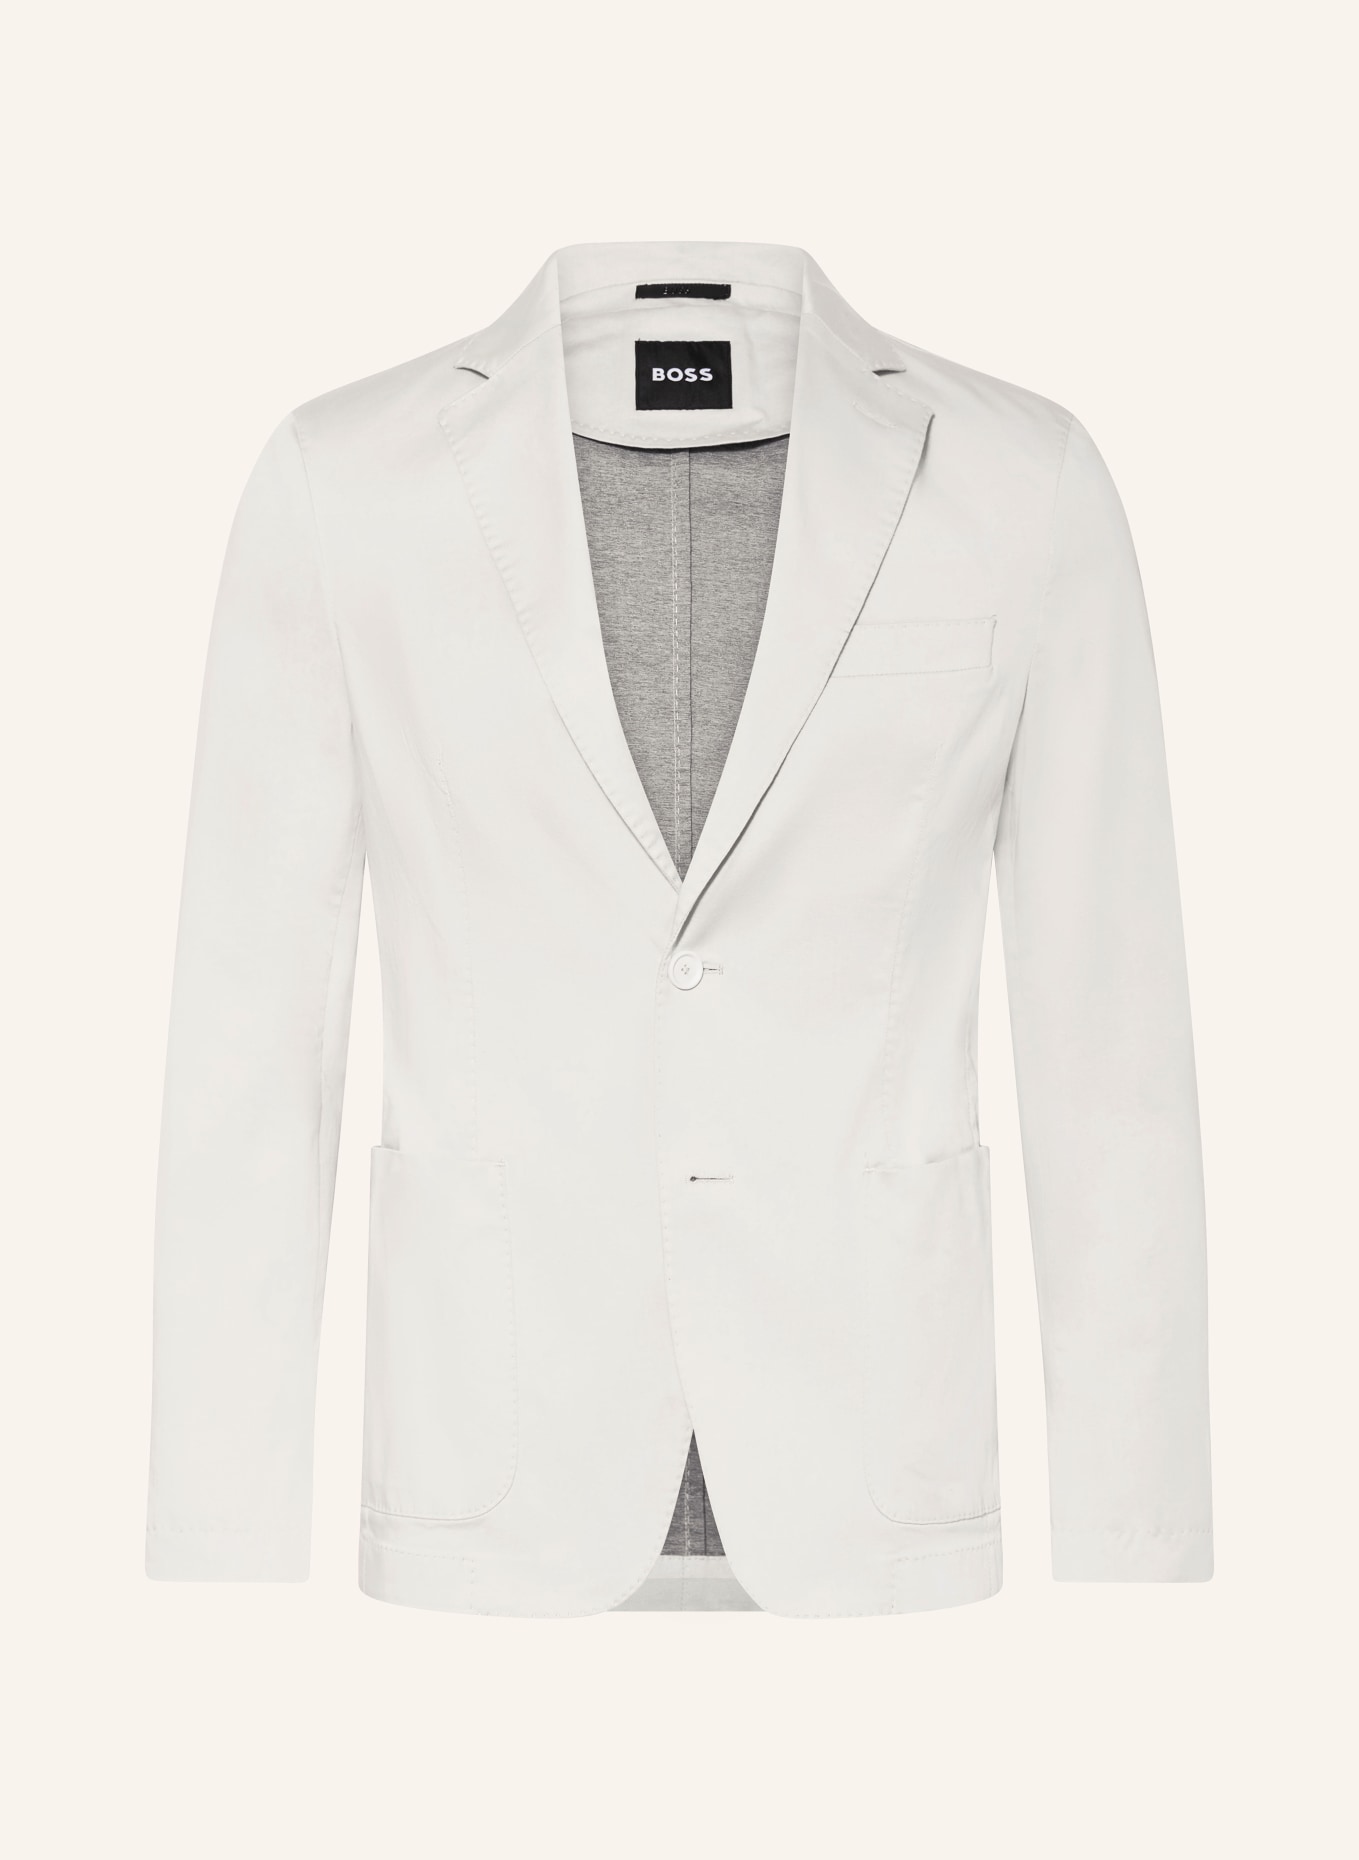 BOSS Anzugsakko HANRY Slim Fit, Farbe: 131 Open White (Bild 1)